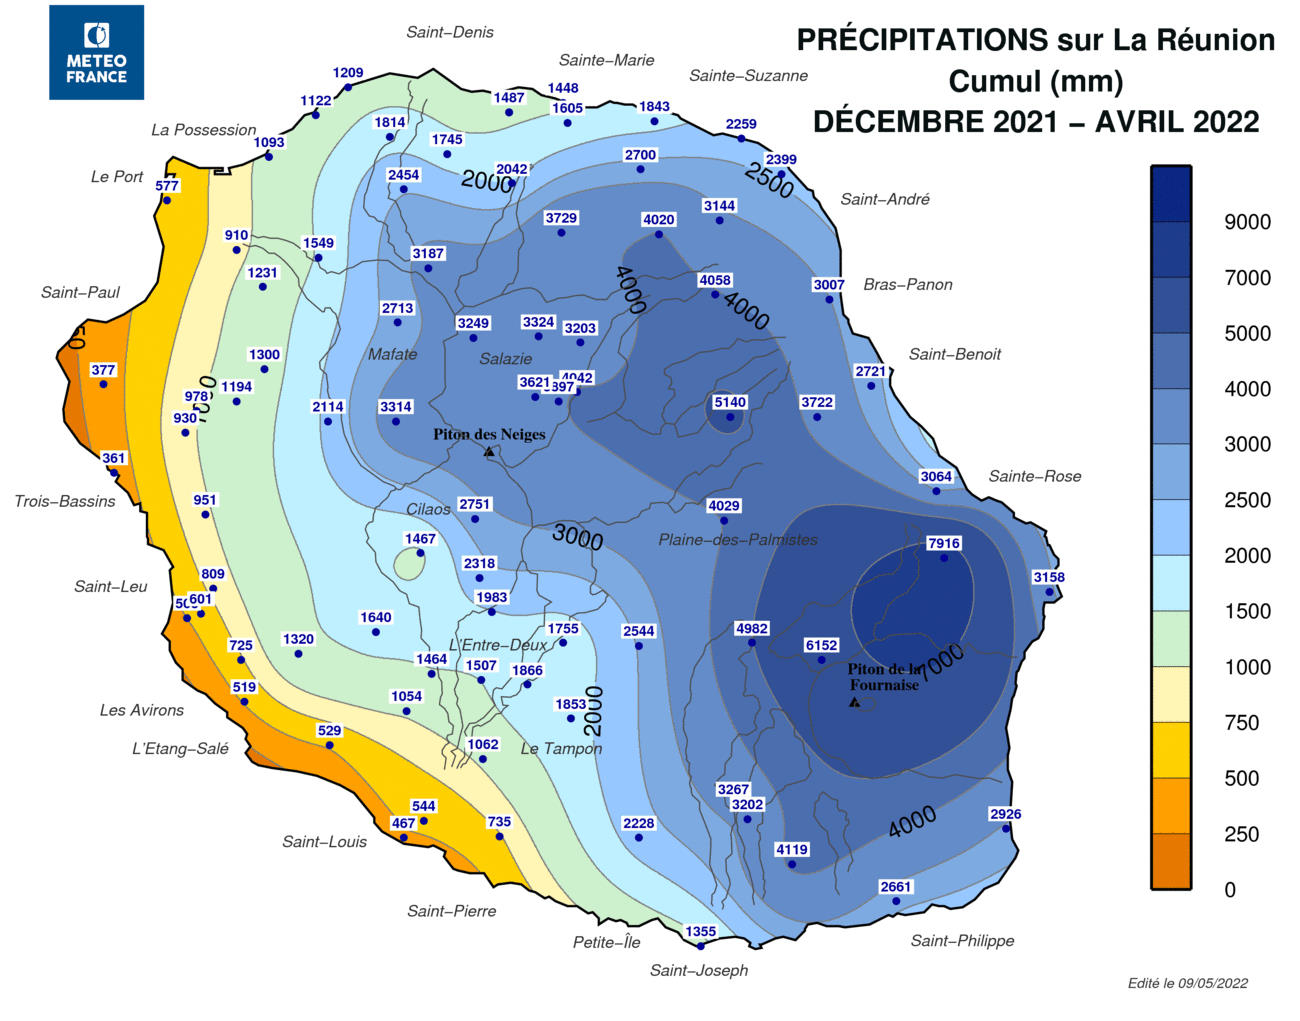 Carte des cumuls de pluie à la Réunion - Saison des Pluies 2021-2022